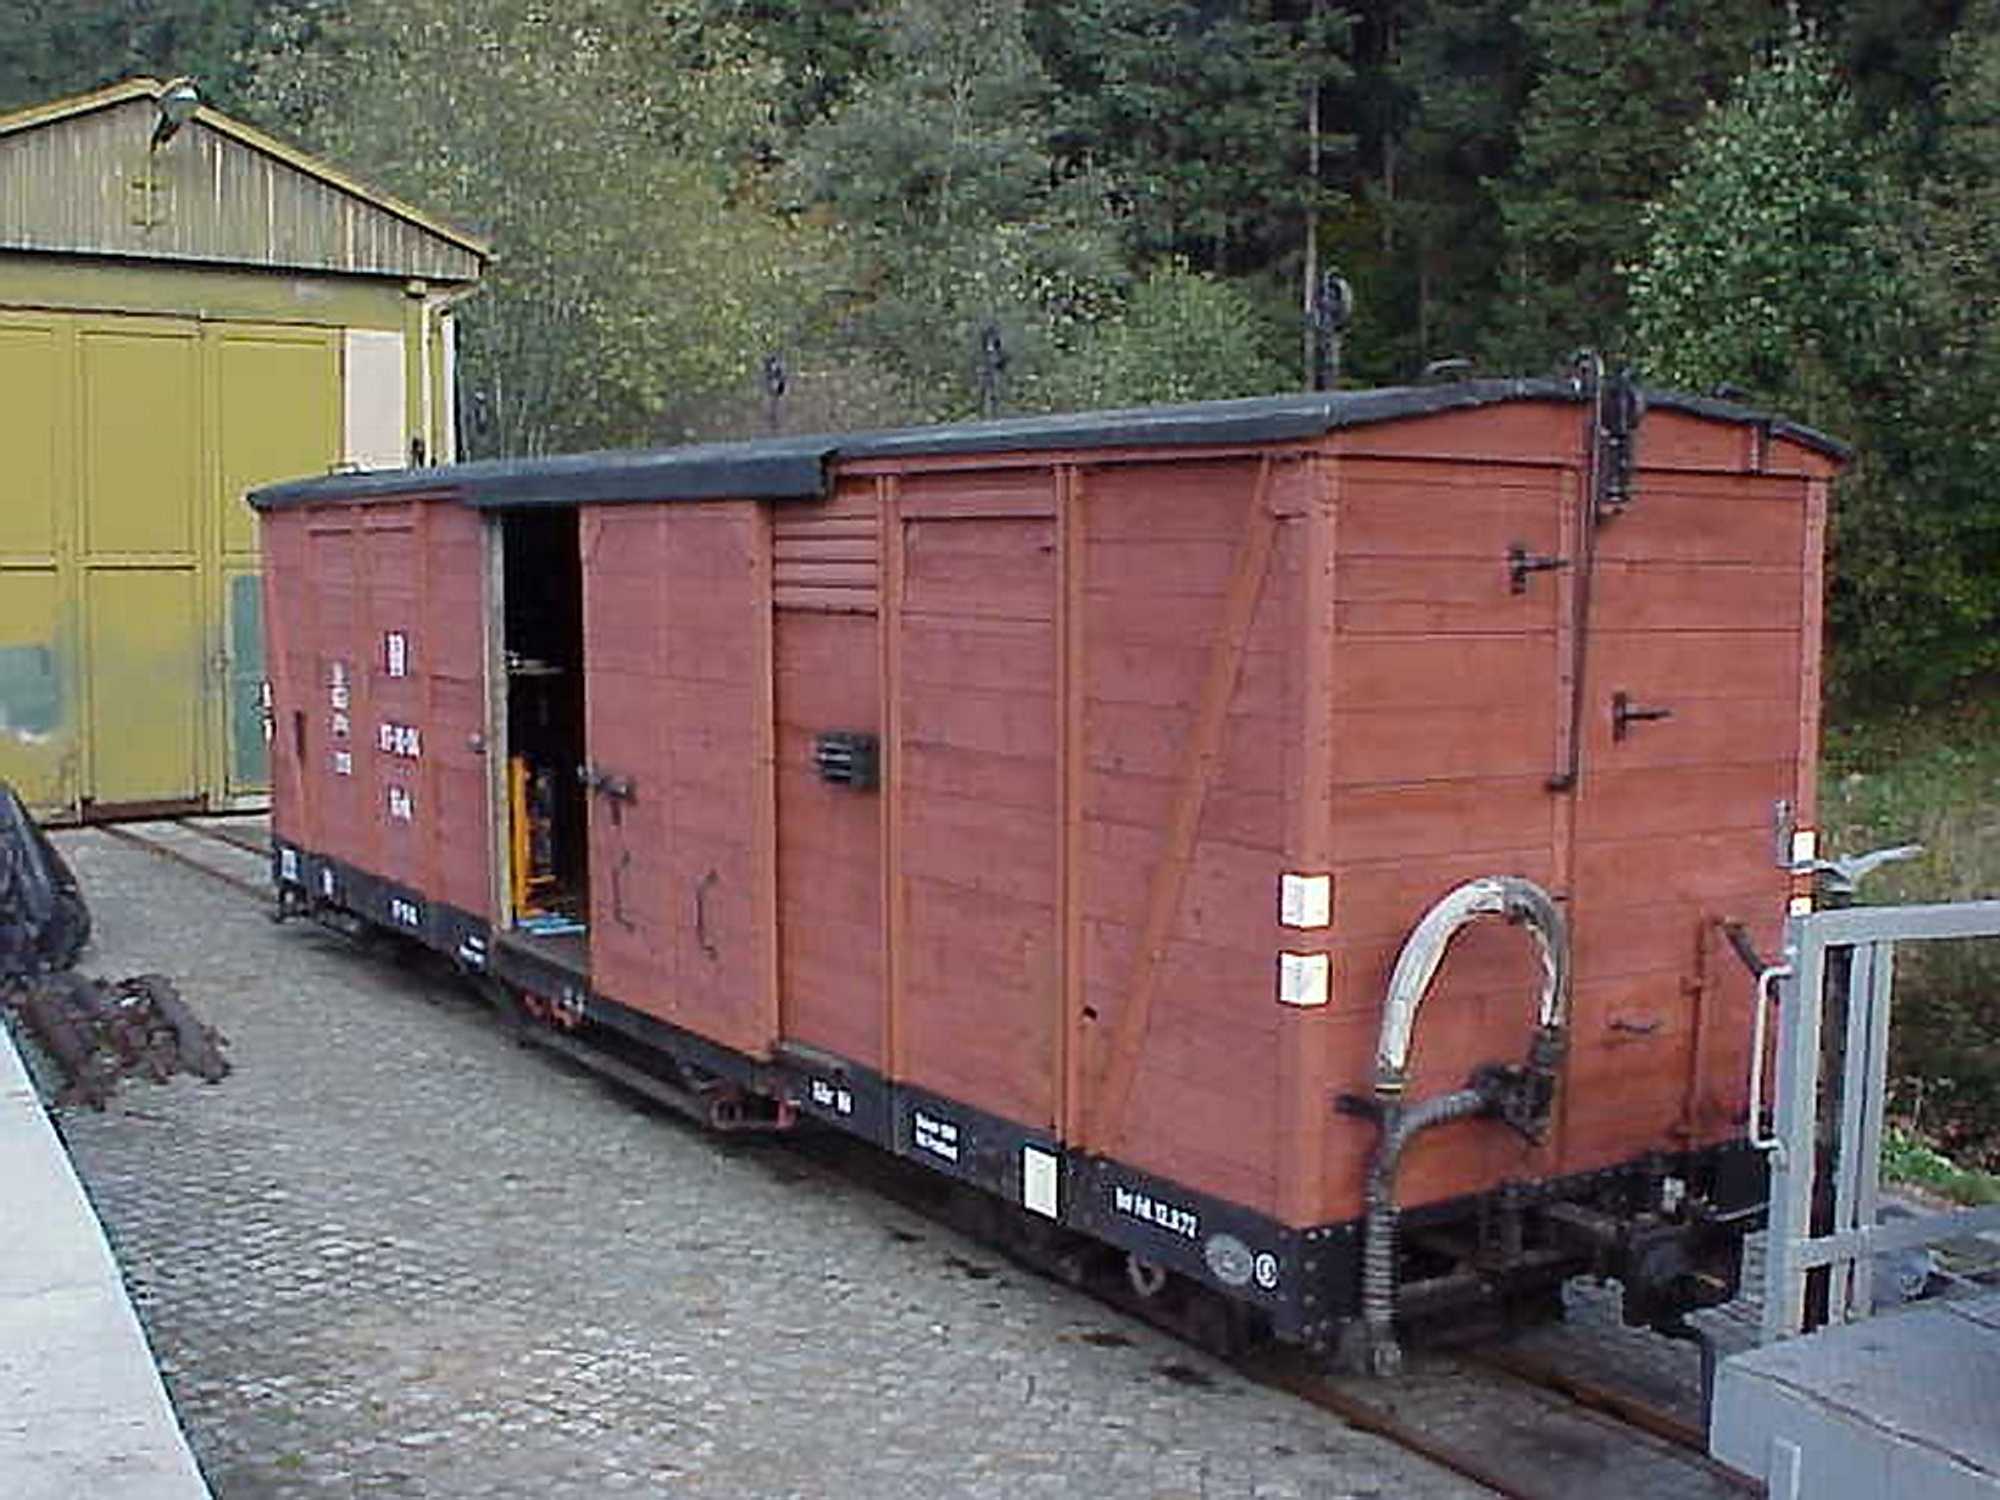 Der GGw 97-10-04 dient seit vielen Jahren für den Gleisbautrupp als Material- und Werkzeuglager, mit dem direkt vor Ort an den Baustellen die Logistik gesichert wird. Hier steht er in Schmalzgrube auf Gleis 4 abgestellt.